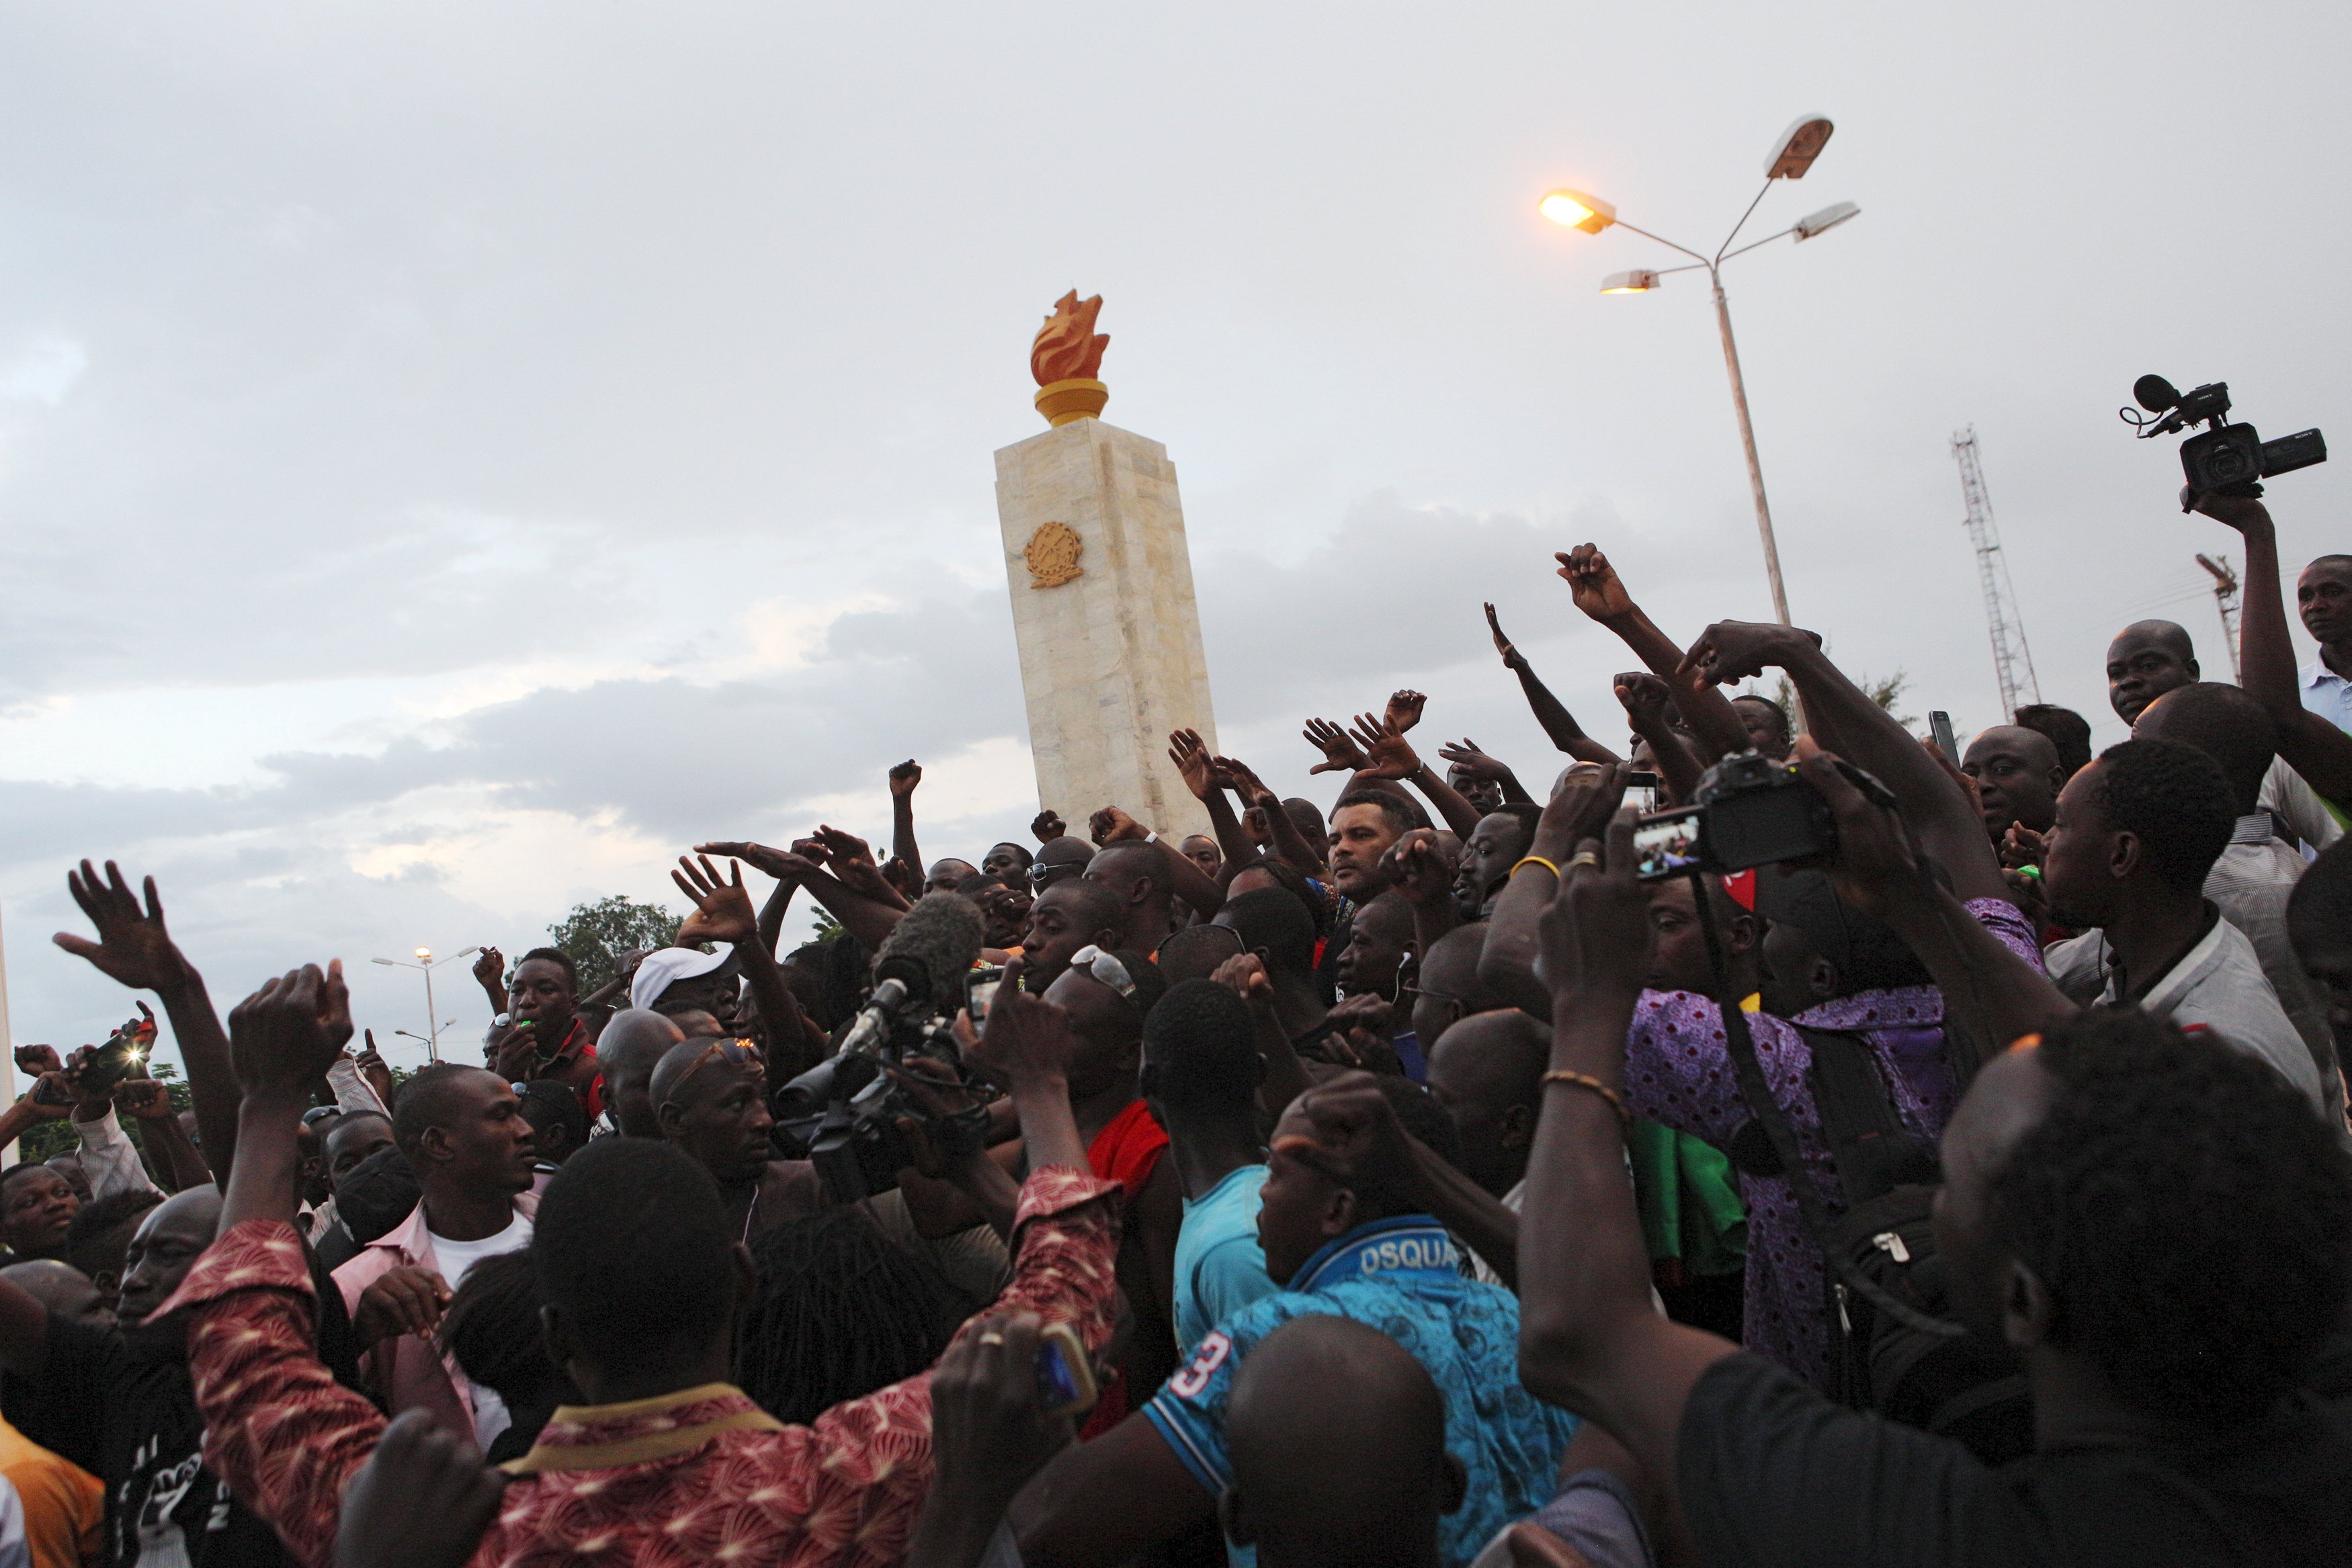 Golpe de Estado en Burkina Faso un año después de la caída del presidente